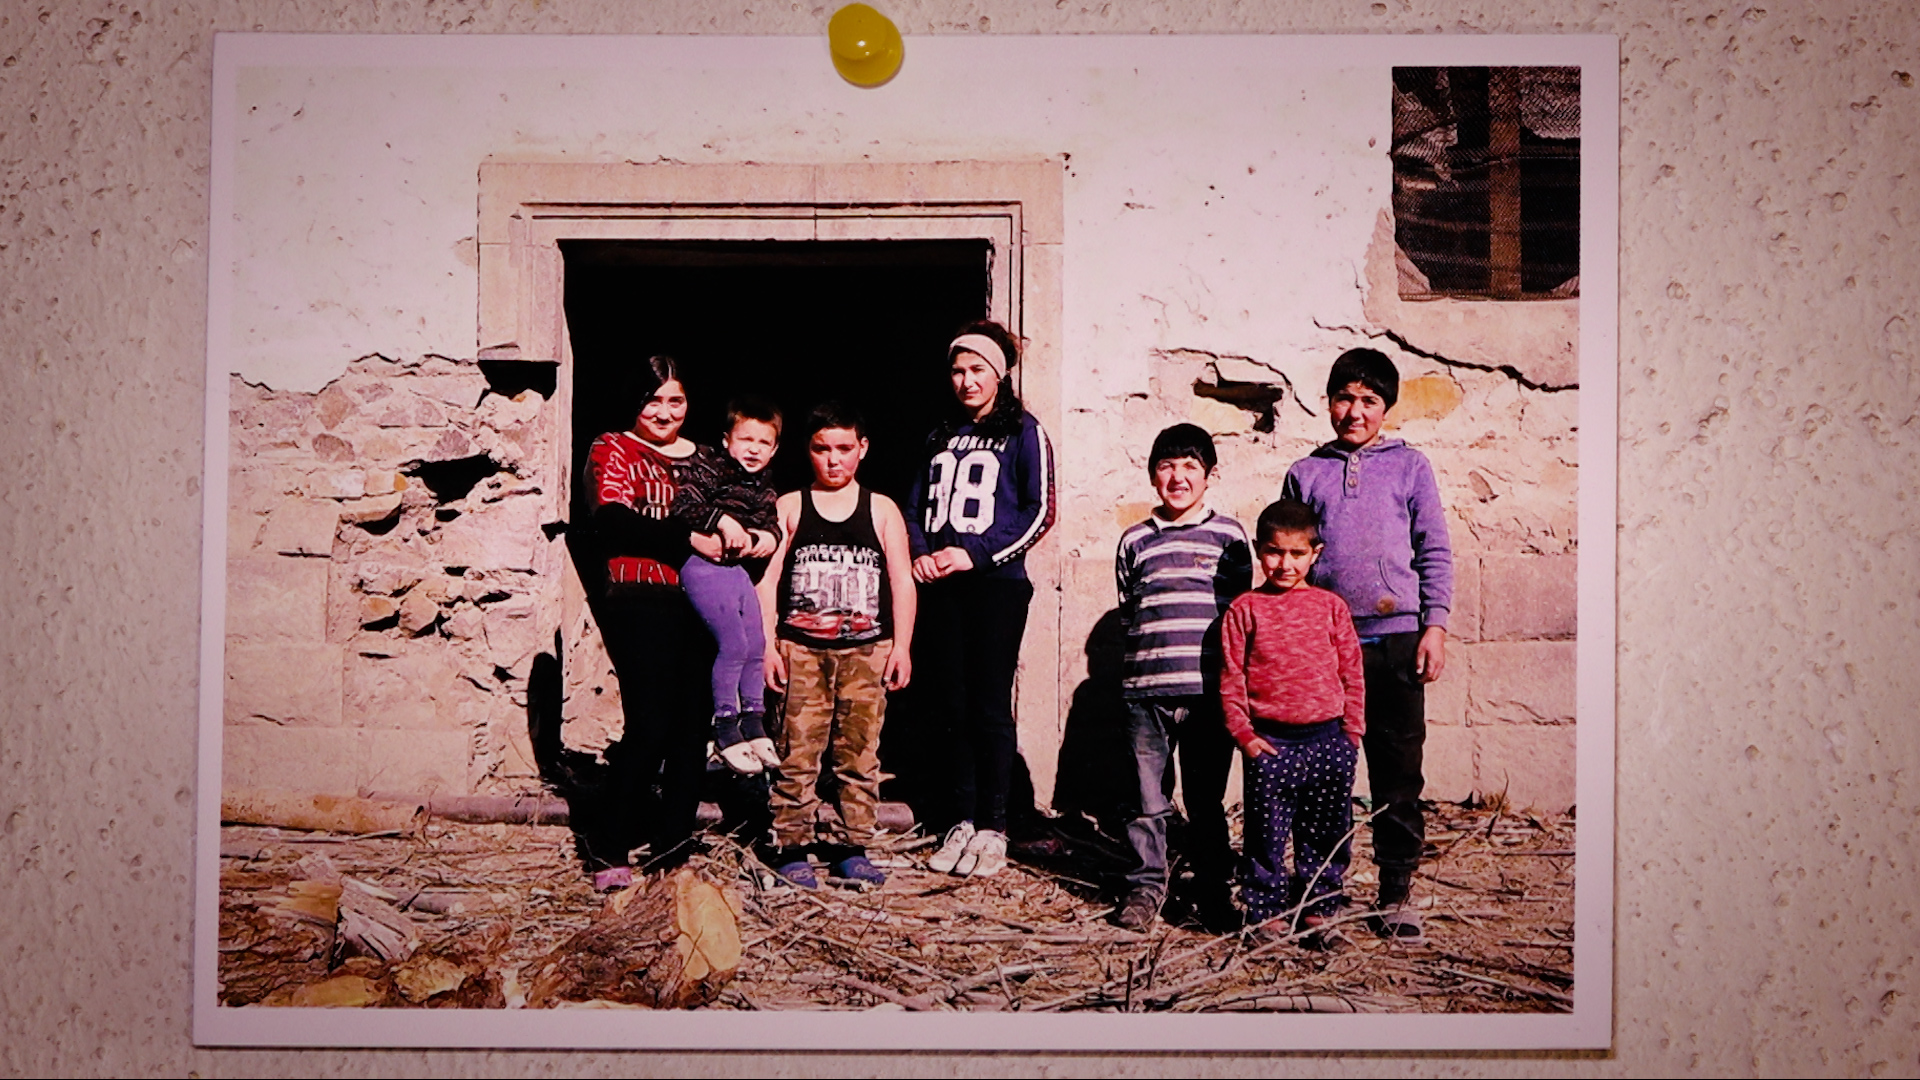 Ինքնասպան մայր, հեռացած հայր․ ինչպես է ապրում Դաստակերտի բազմազավակ ընտանիքը